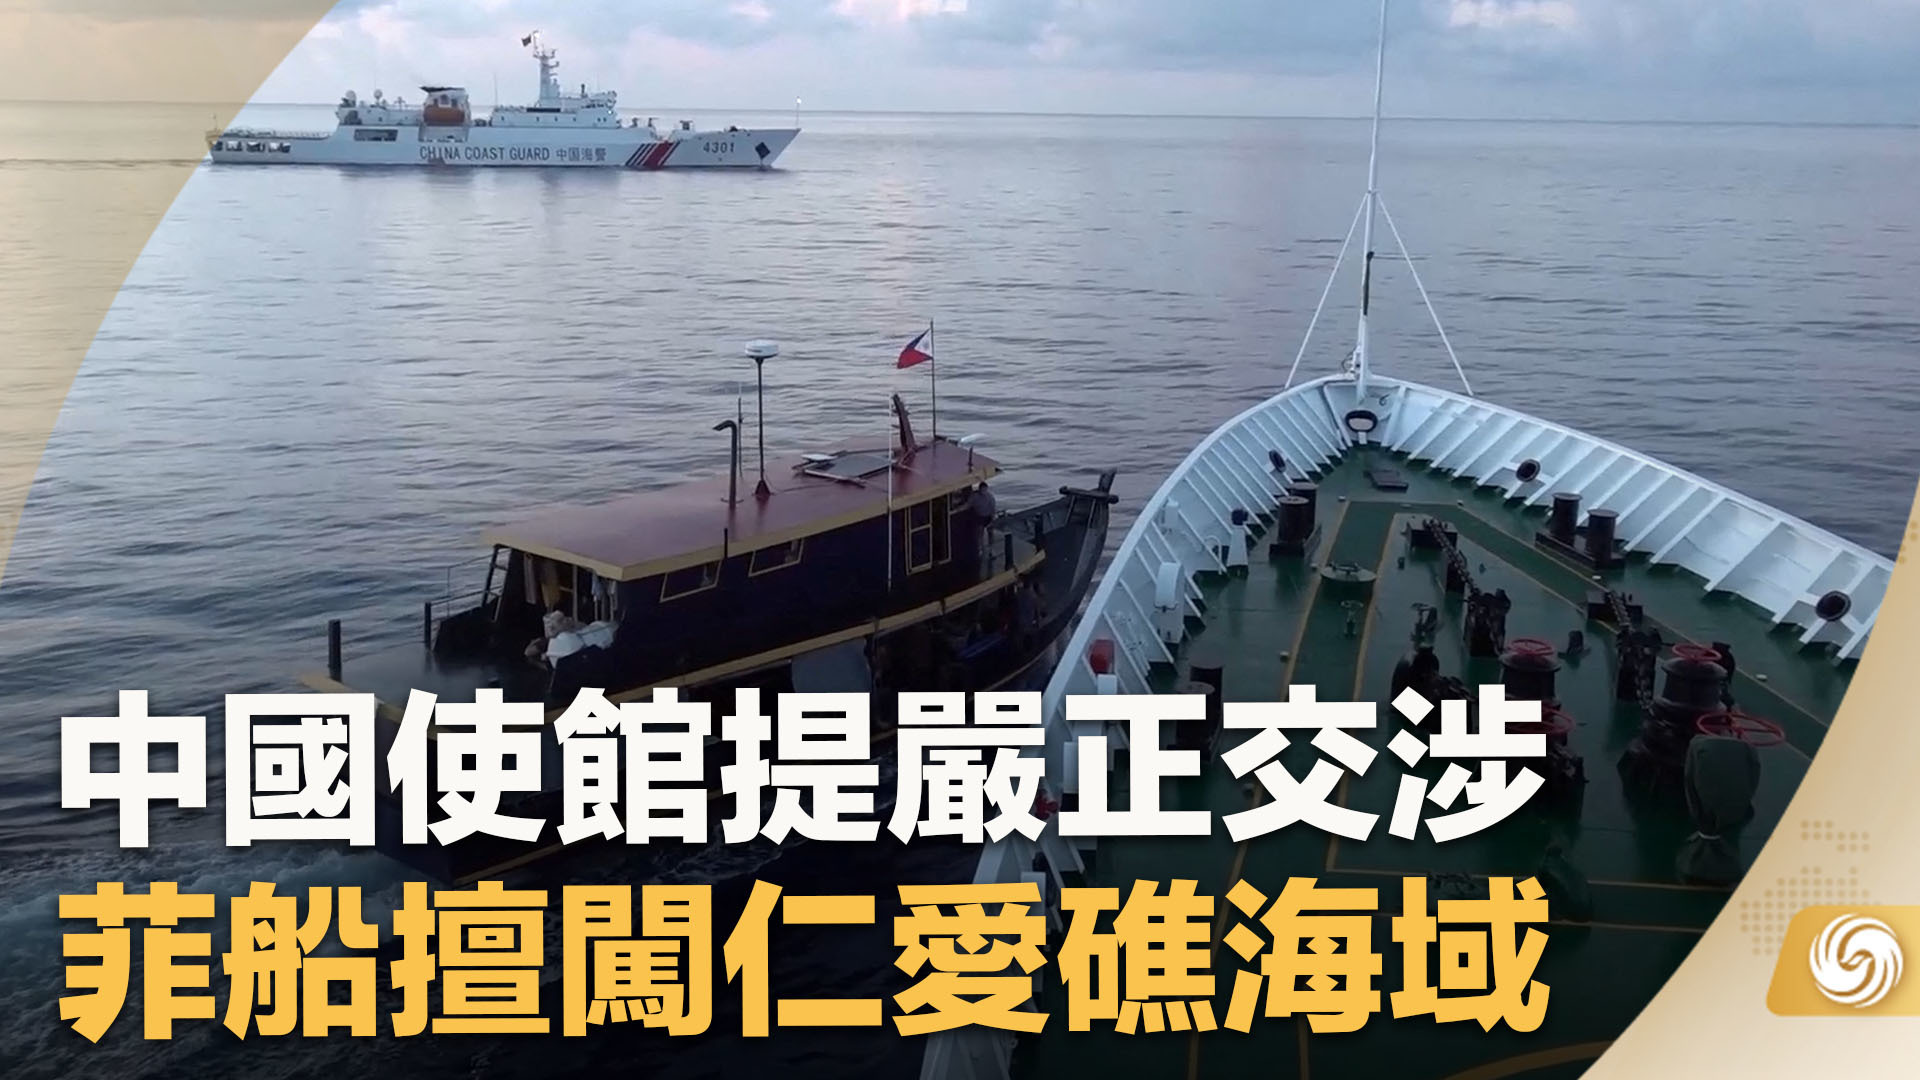 中国海警「依法对菲律宾侵闯黄岩岛邻近海域的 3 艘公务船实施管控措施」，有哪些信息值得关注？ - 知乎